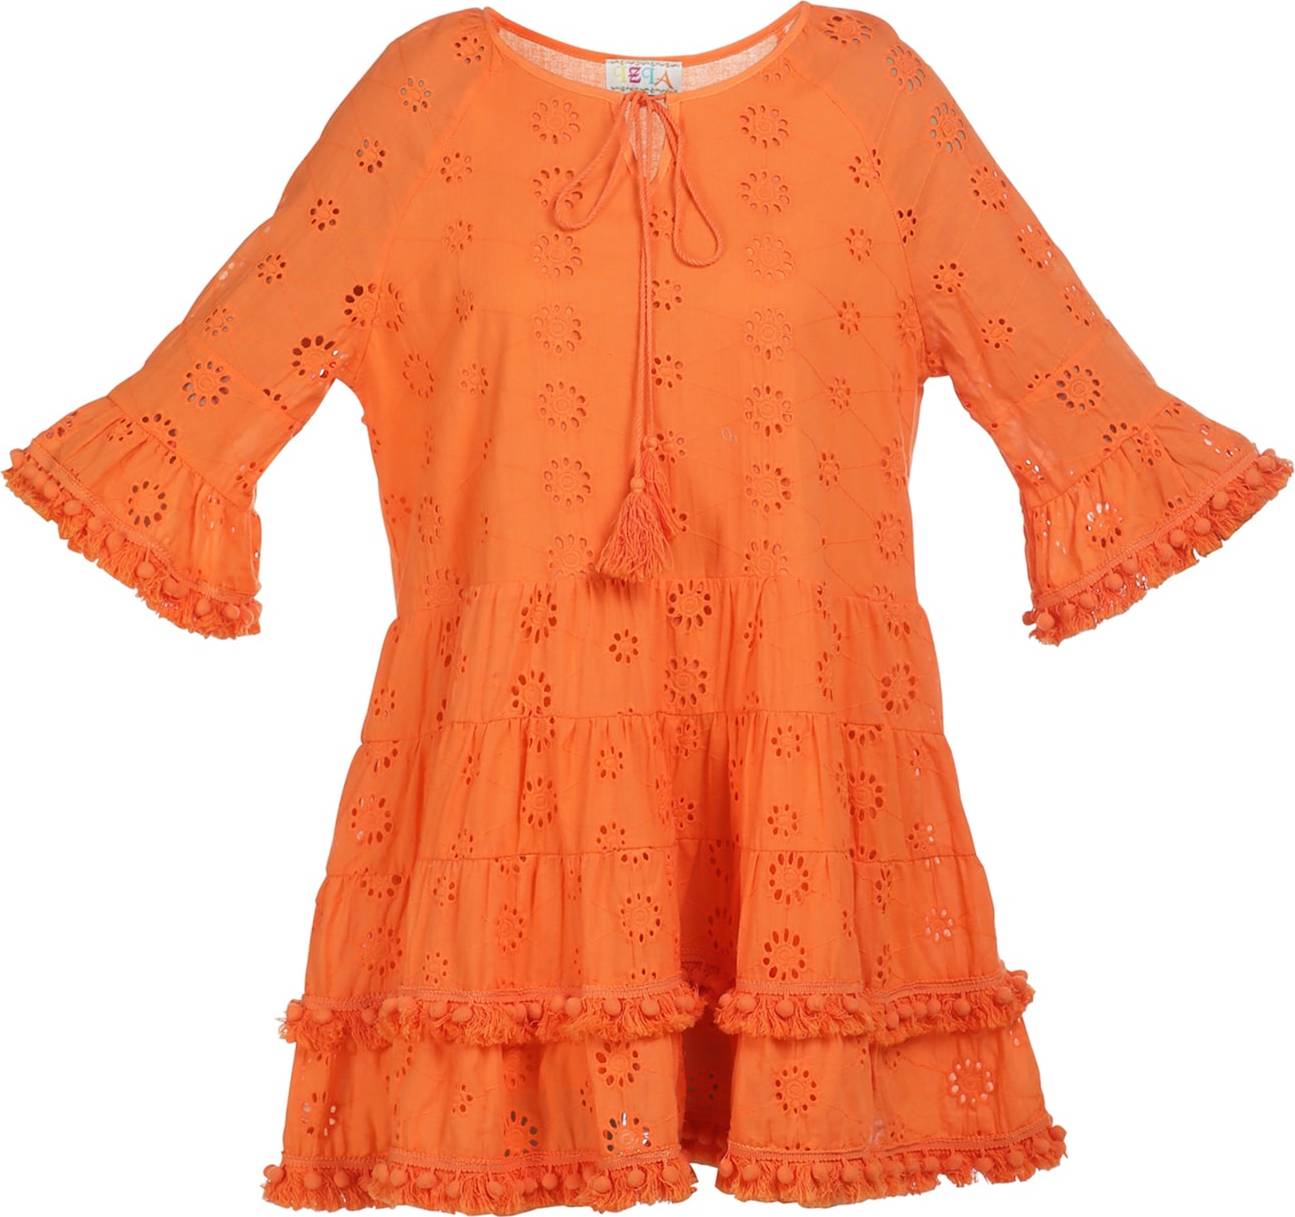 IZIA Letní šaty oranžová